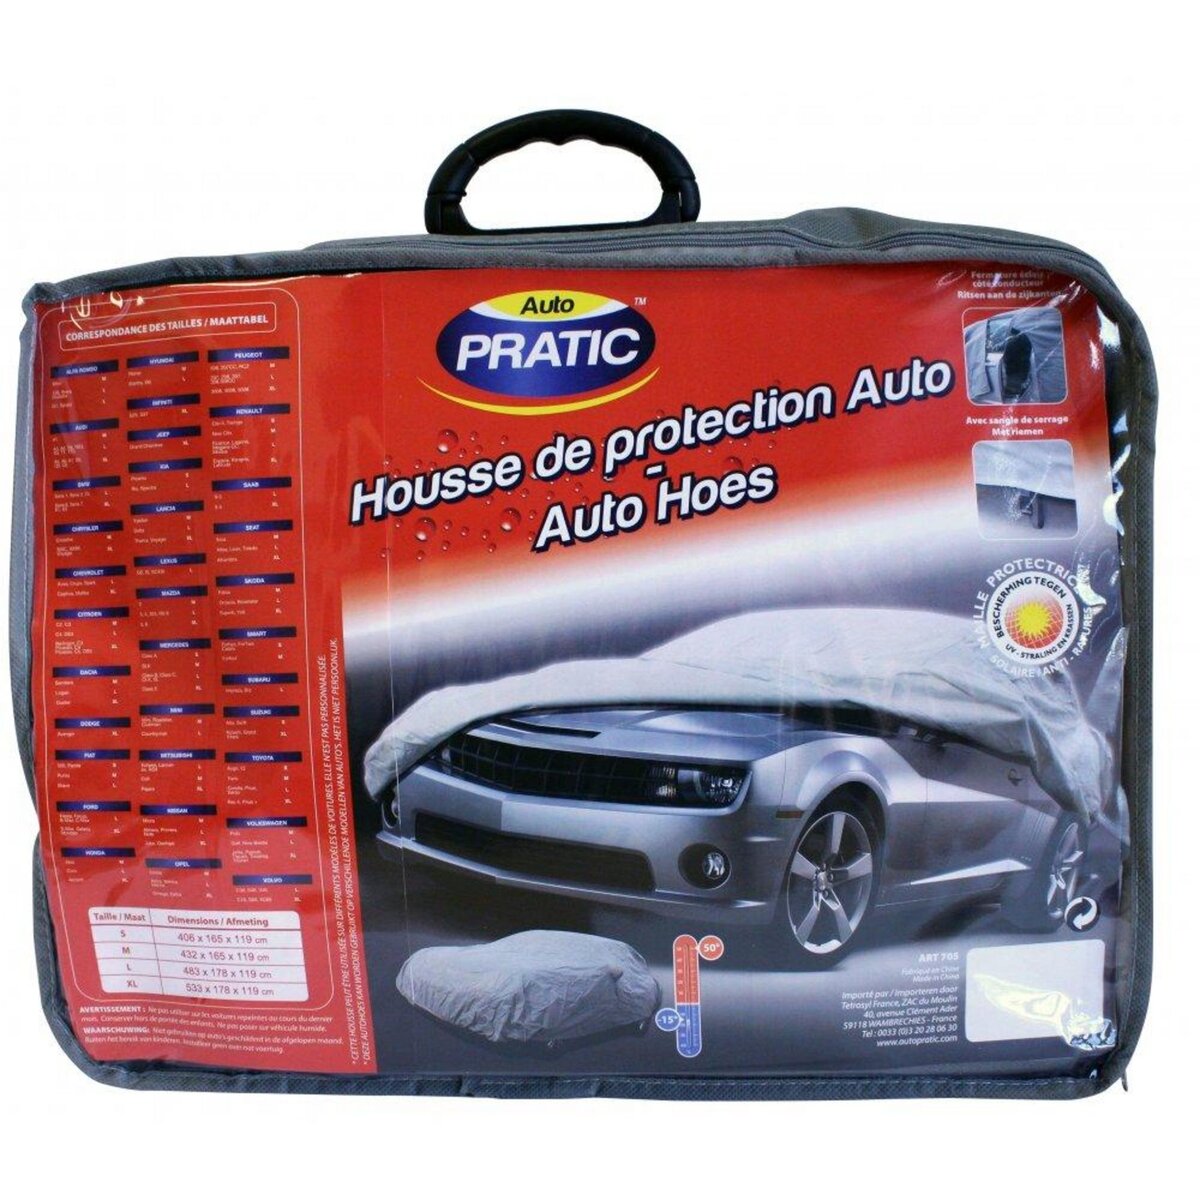 Housse de protection Auto taille S - Auto Pratic pas cher 